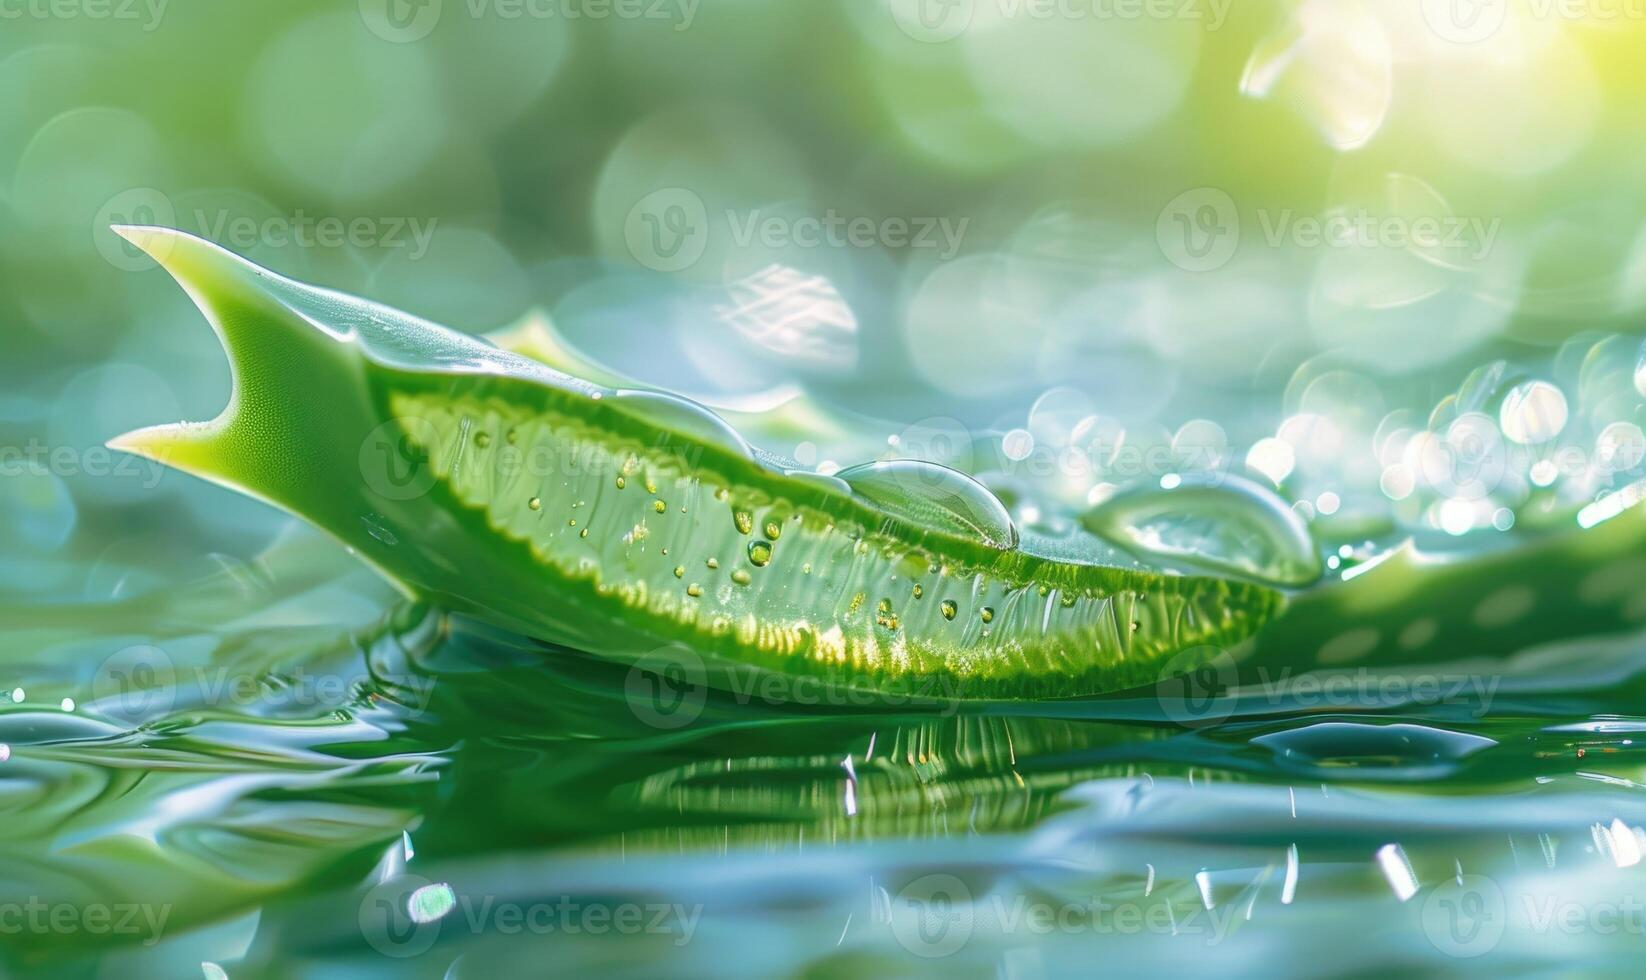 närbild av en nyligen skära aloe vera blad sipprar med gel foto